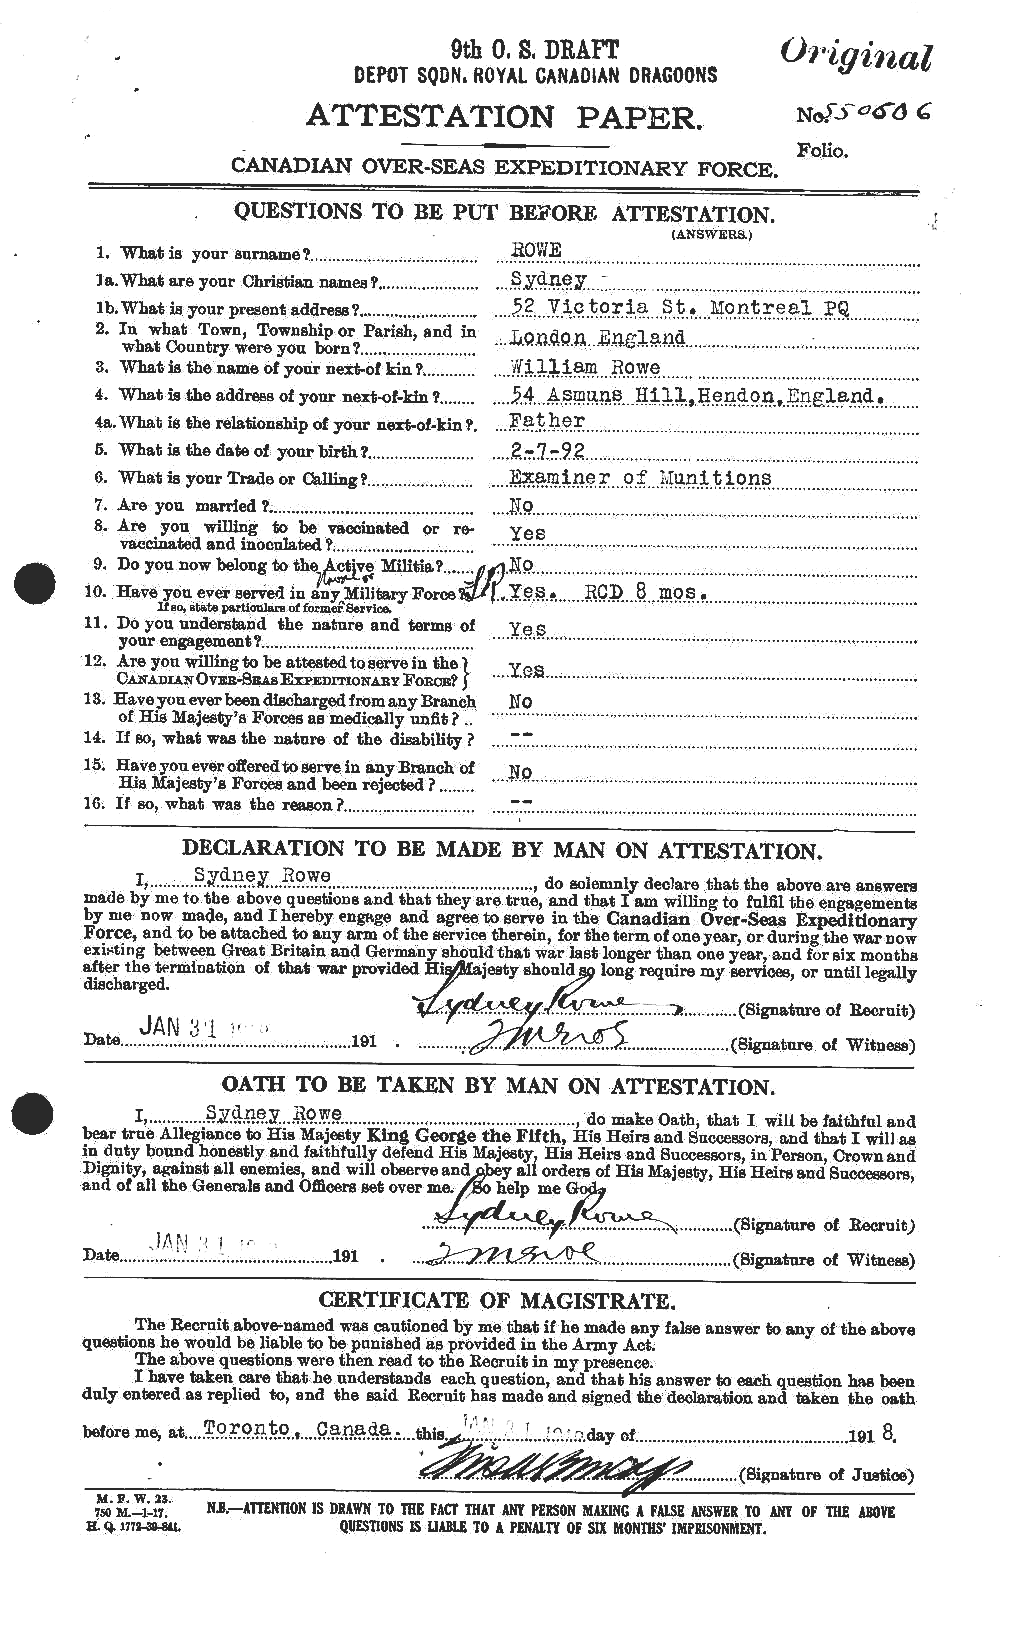 Dossiers du Personnel de la Première Guerre mondiale - CEC 615995a